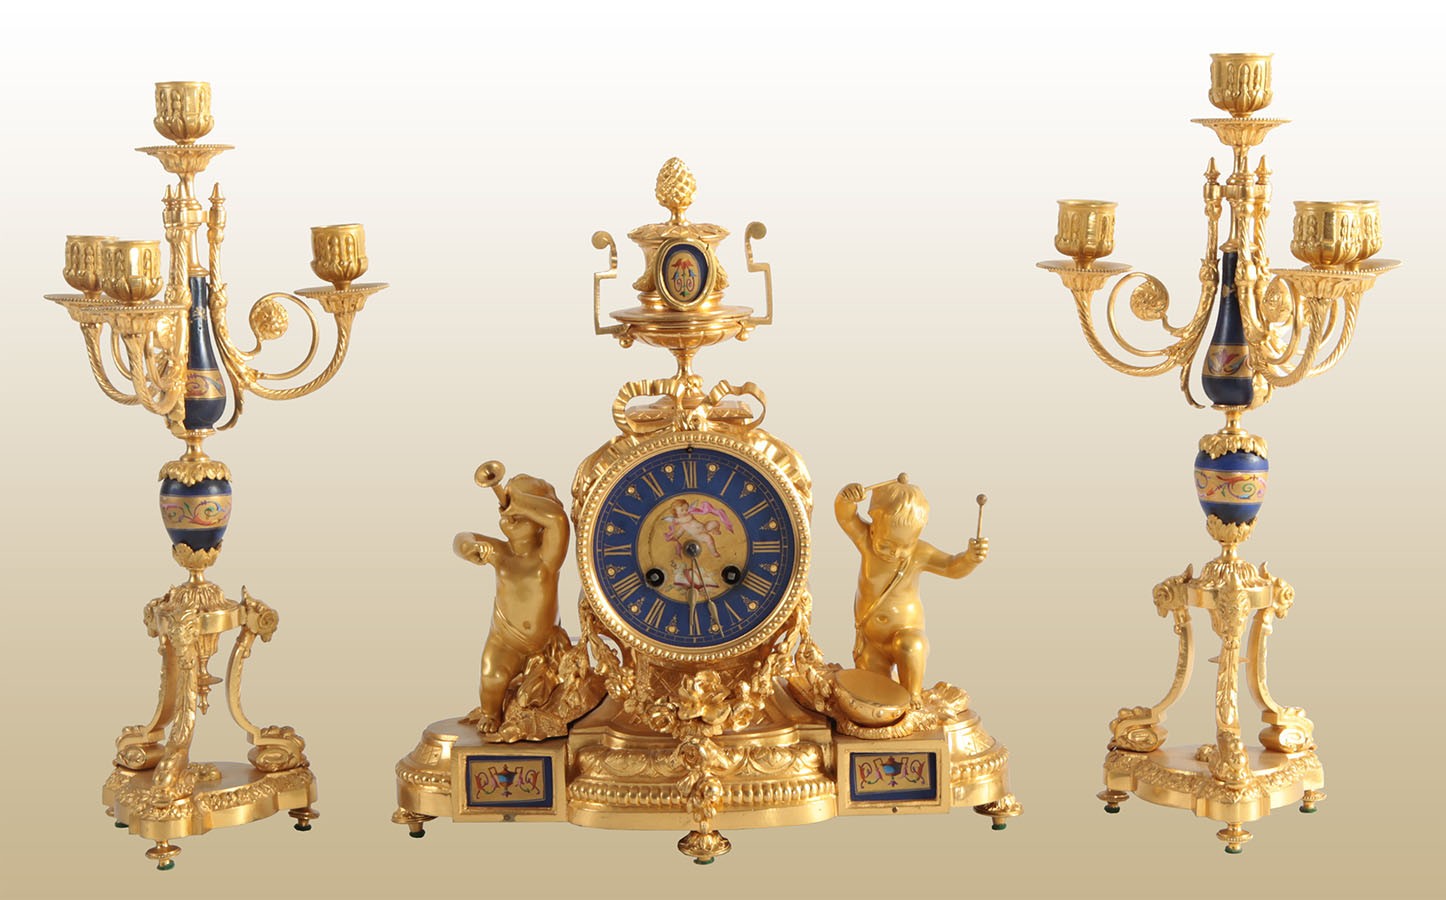 Tris orologio e candelieri in bronzo dorato